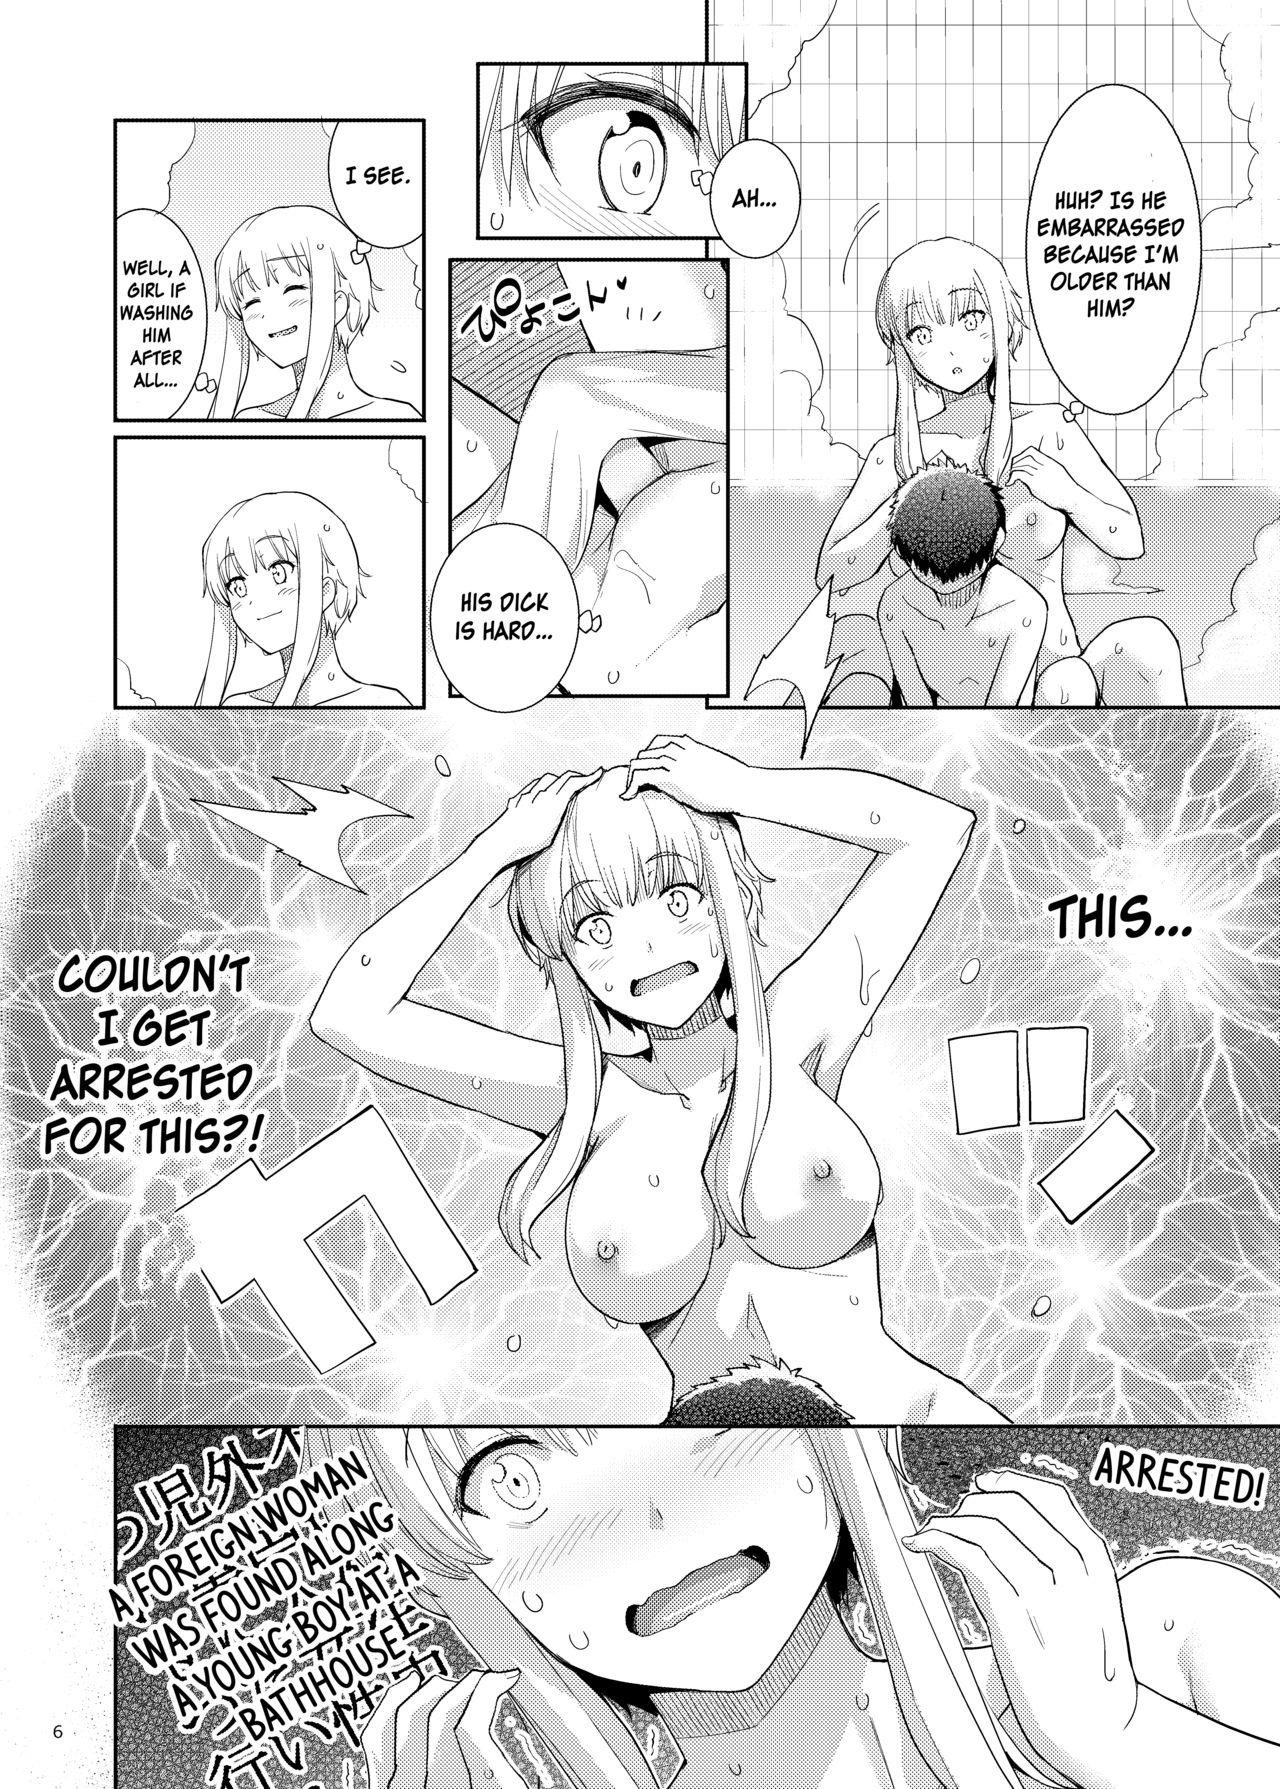 Small Boobs Ku-neru Sumata 6 - Ku-neru maruta Slut Porn - Page 5